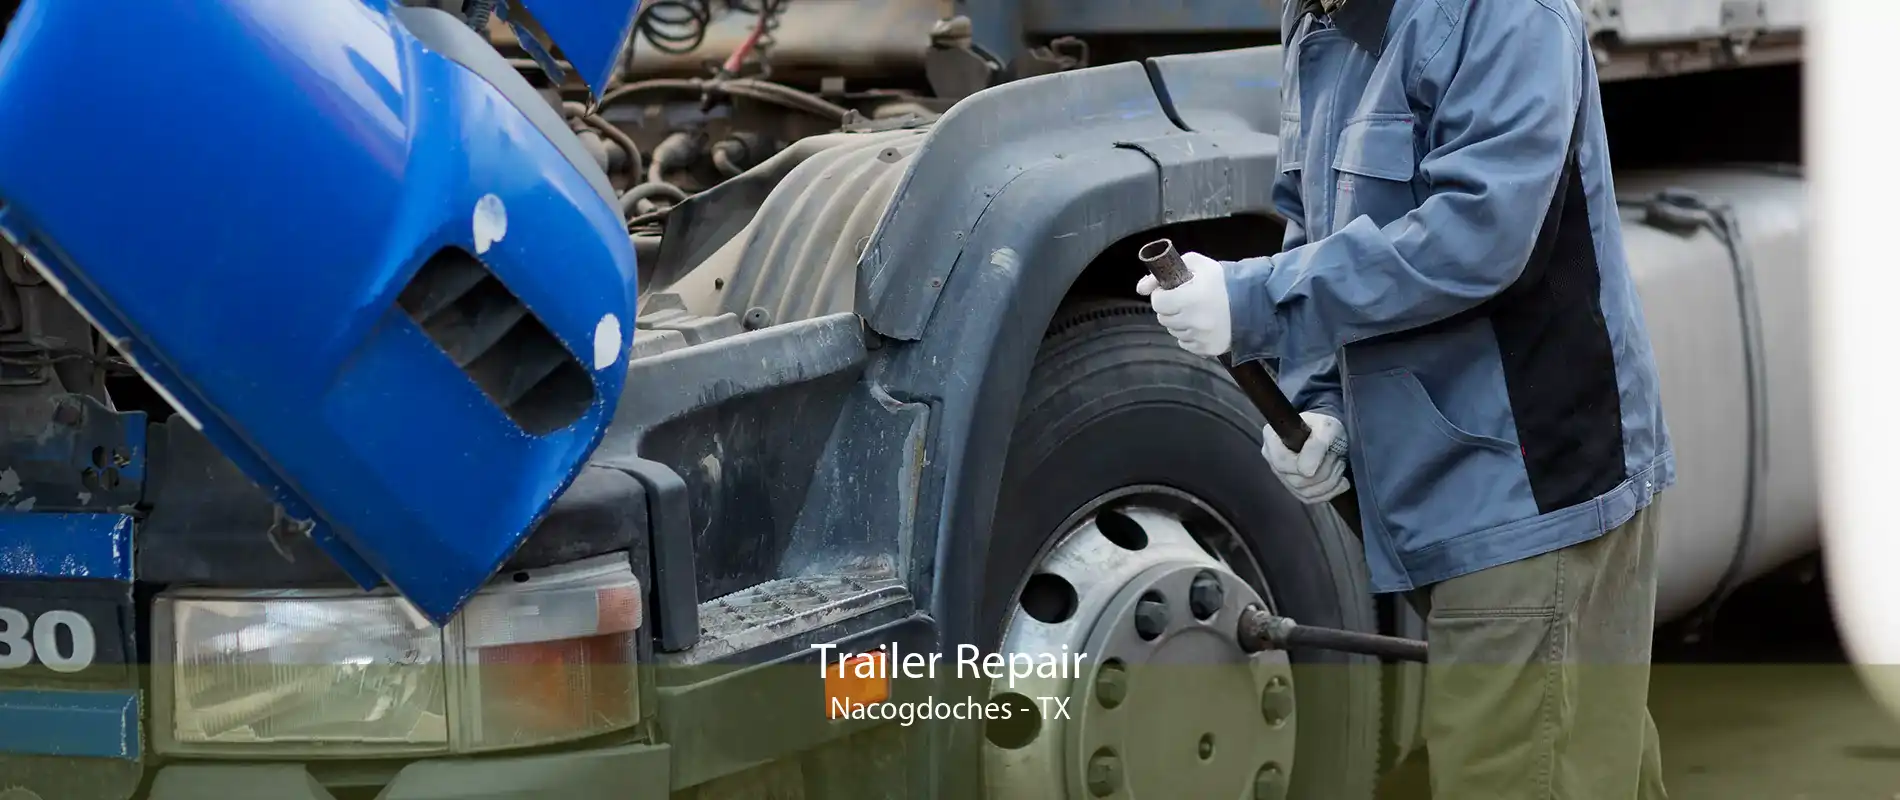 Trailer Repair Nacogdoches - TX